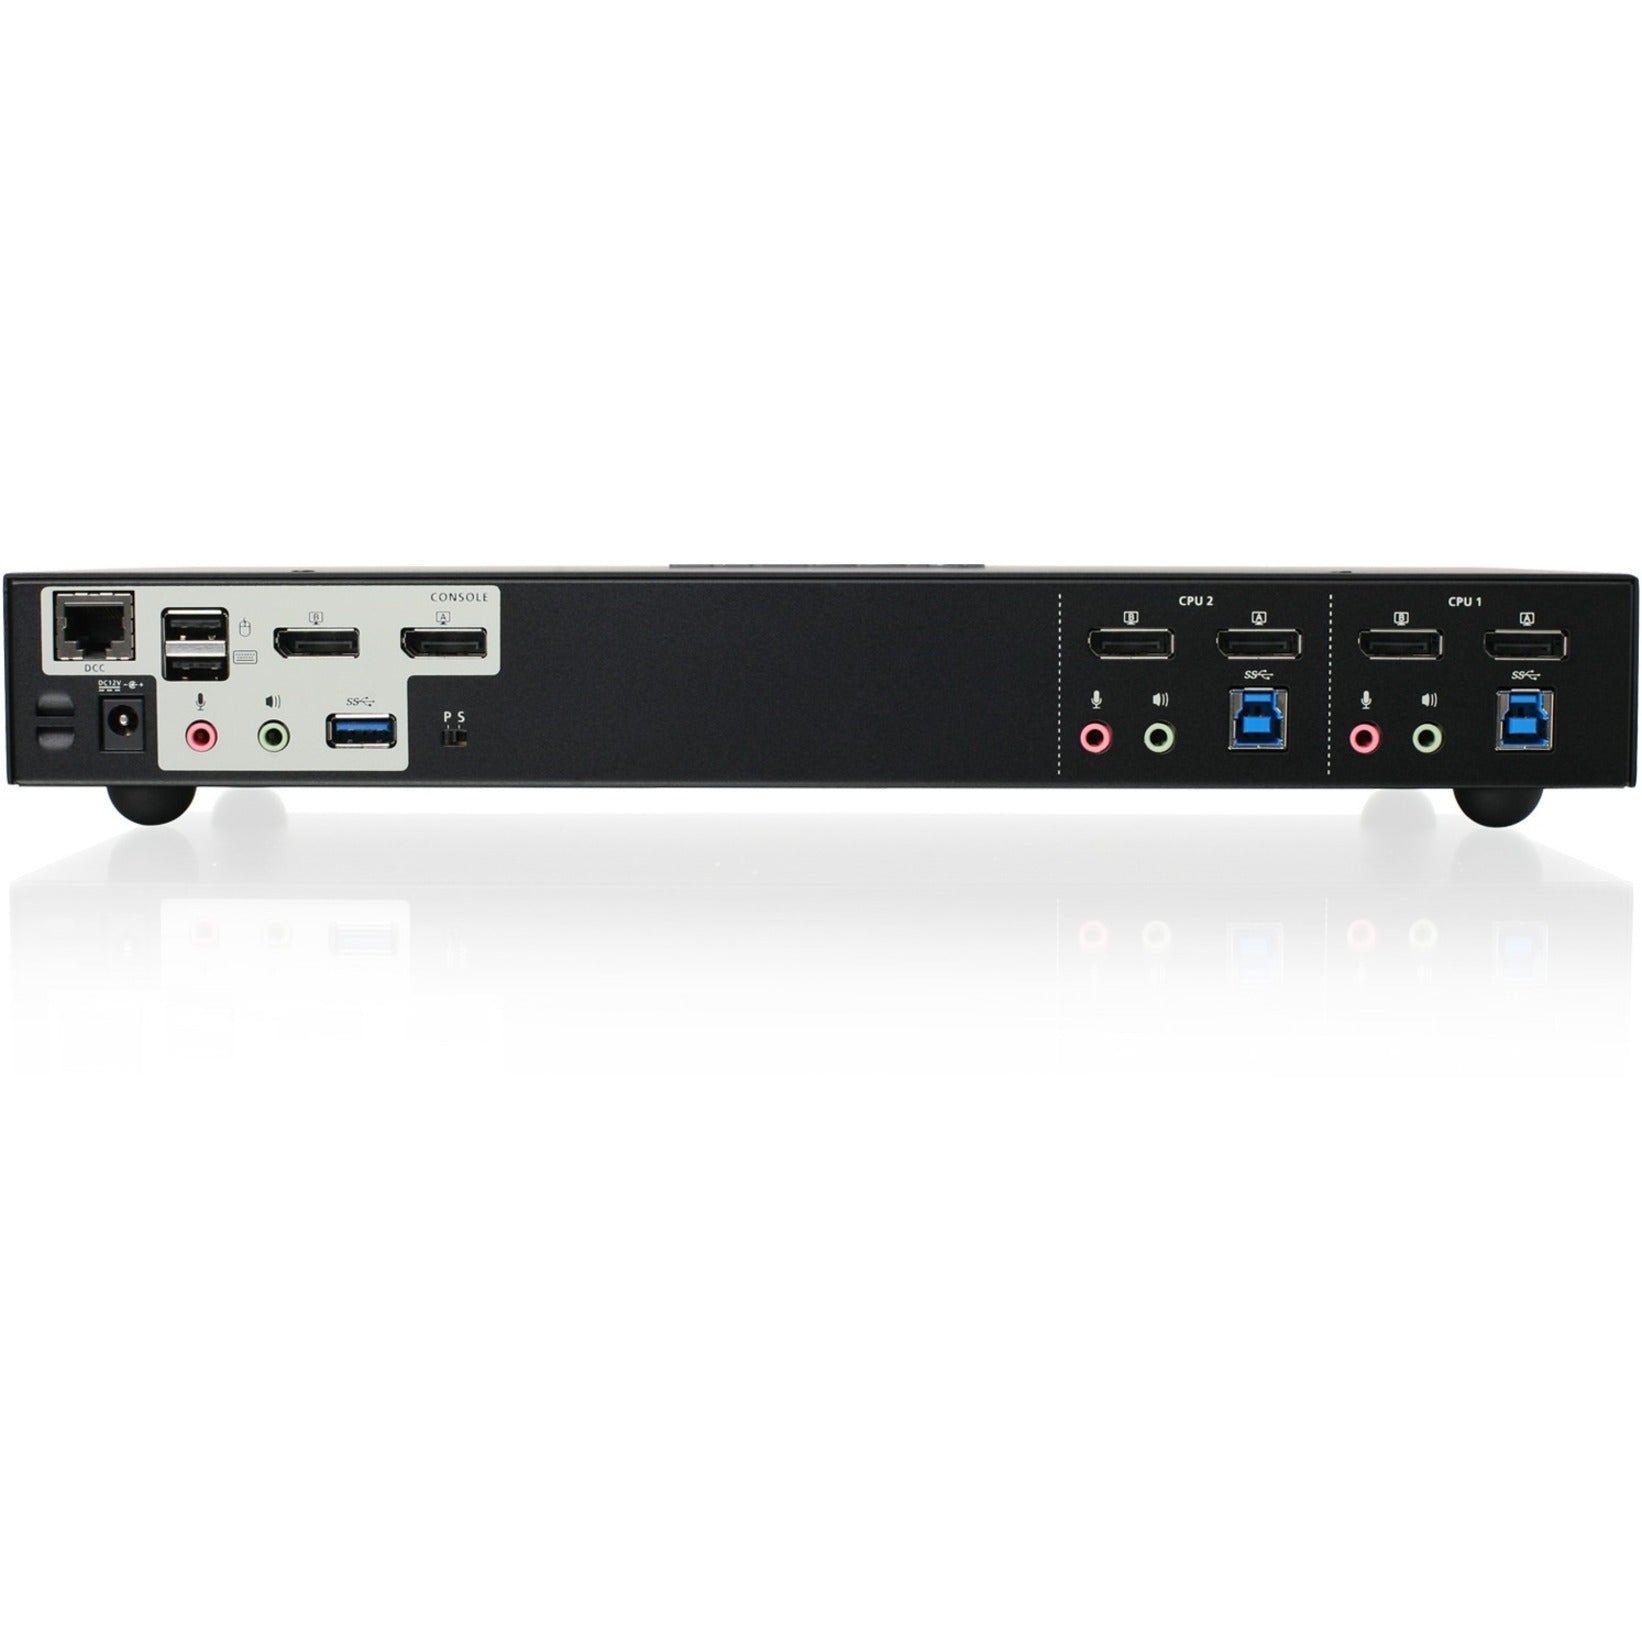 IOGEAR GCS1942 2-Port 4K Dual View DisplayPort KVMP with USB 3.0 Hub and Audio (TAA), Maximum Video Resolution 4096 x 2160, 3 Year Limited Warranty